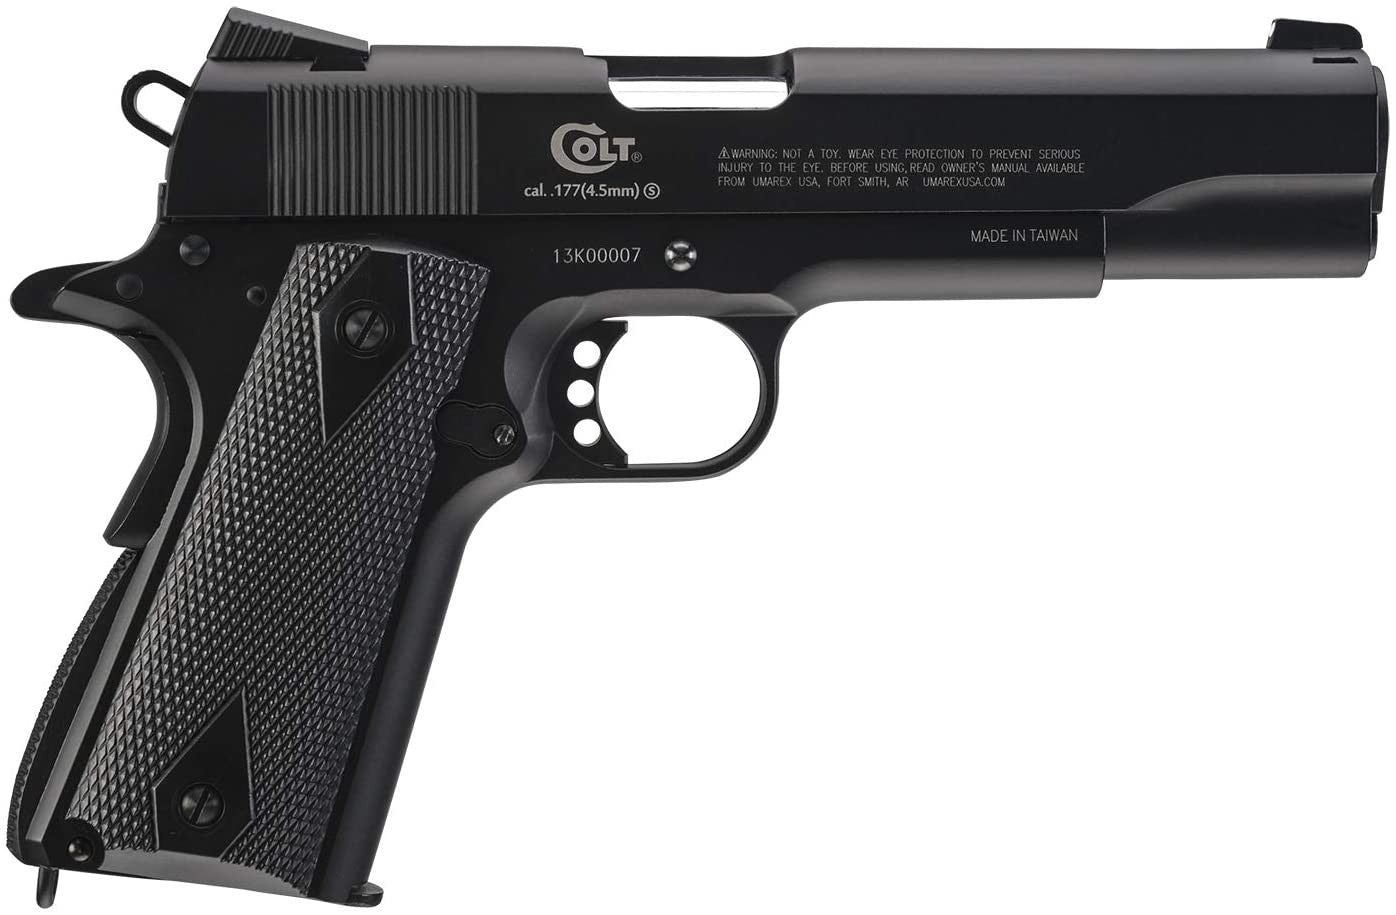 Pistola Colt Commander 325 fps Calibre .177 Full-Metal